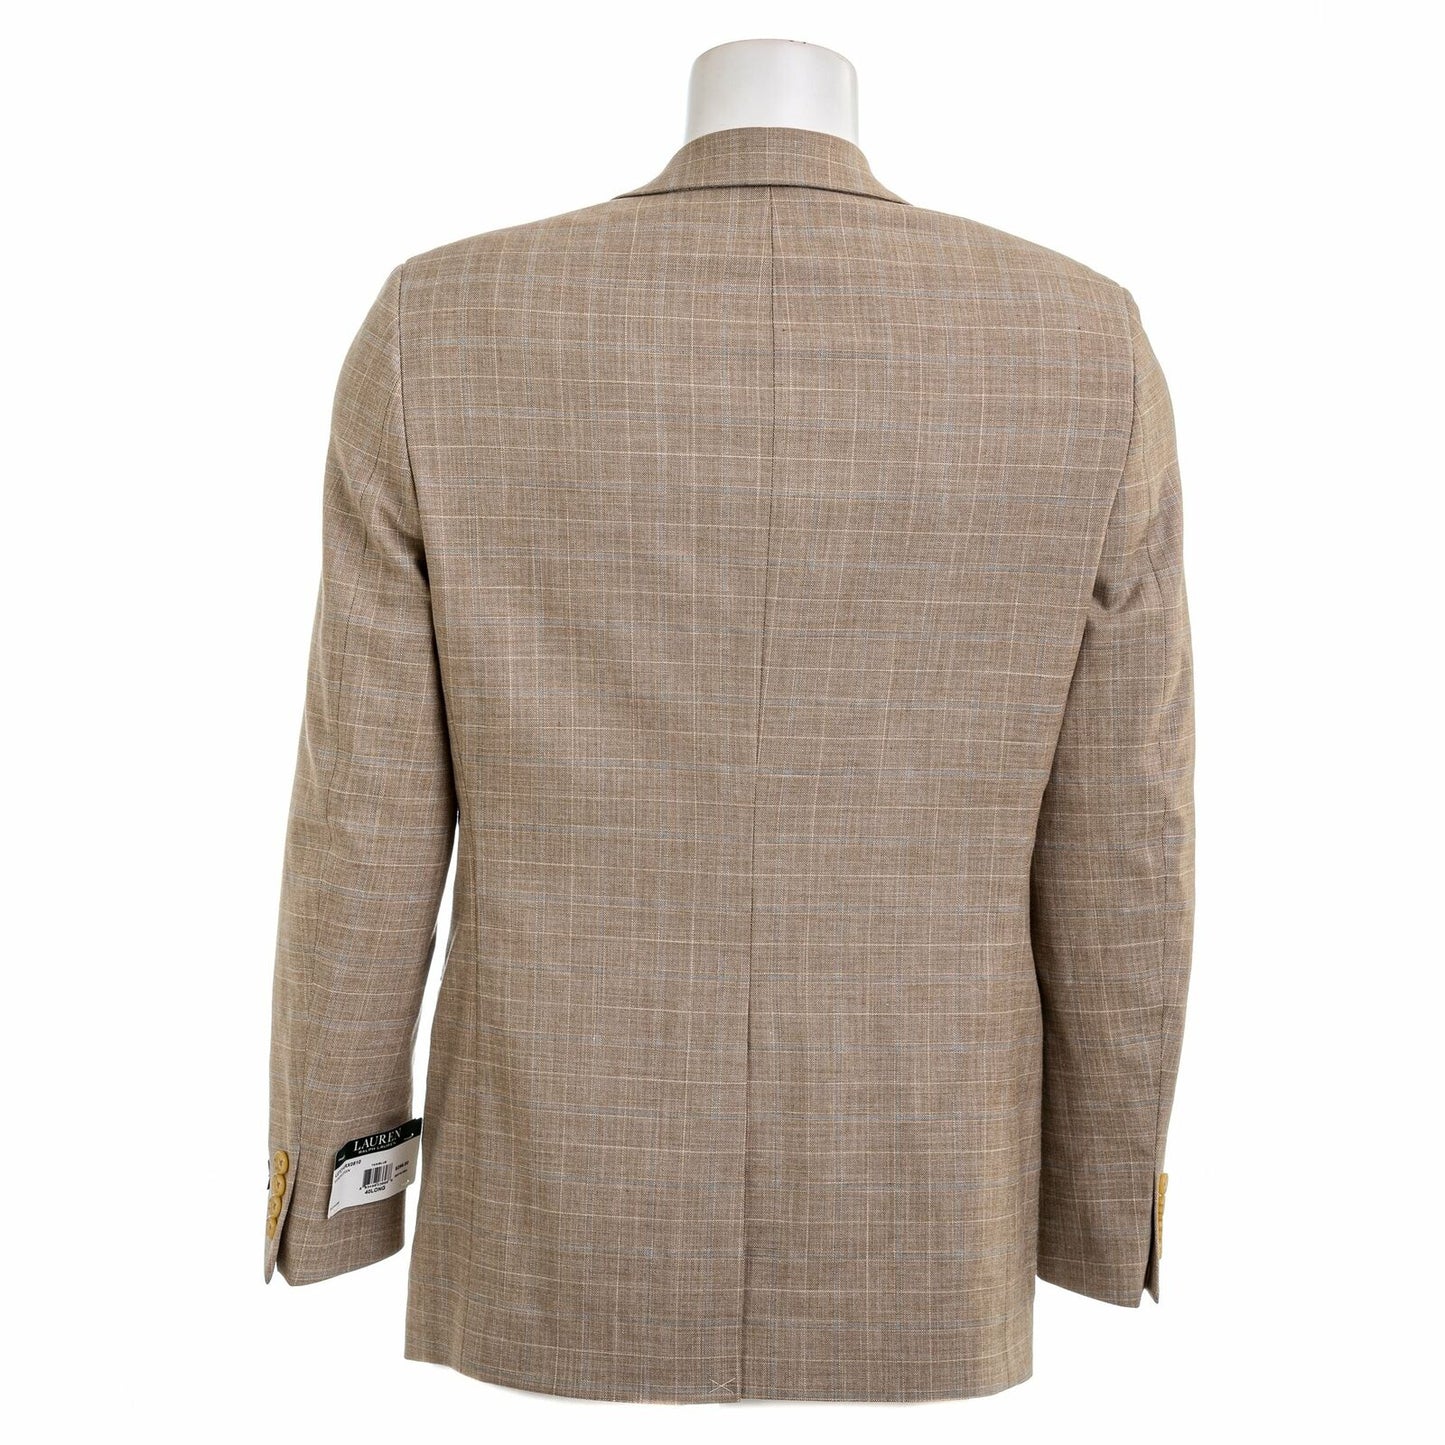 LAUREN RALPH LAUREN Men's Lexington Ultra Flex Suit Jacket Blazer  Color Tan Size 36R